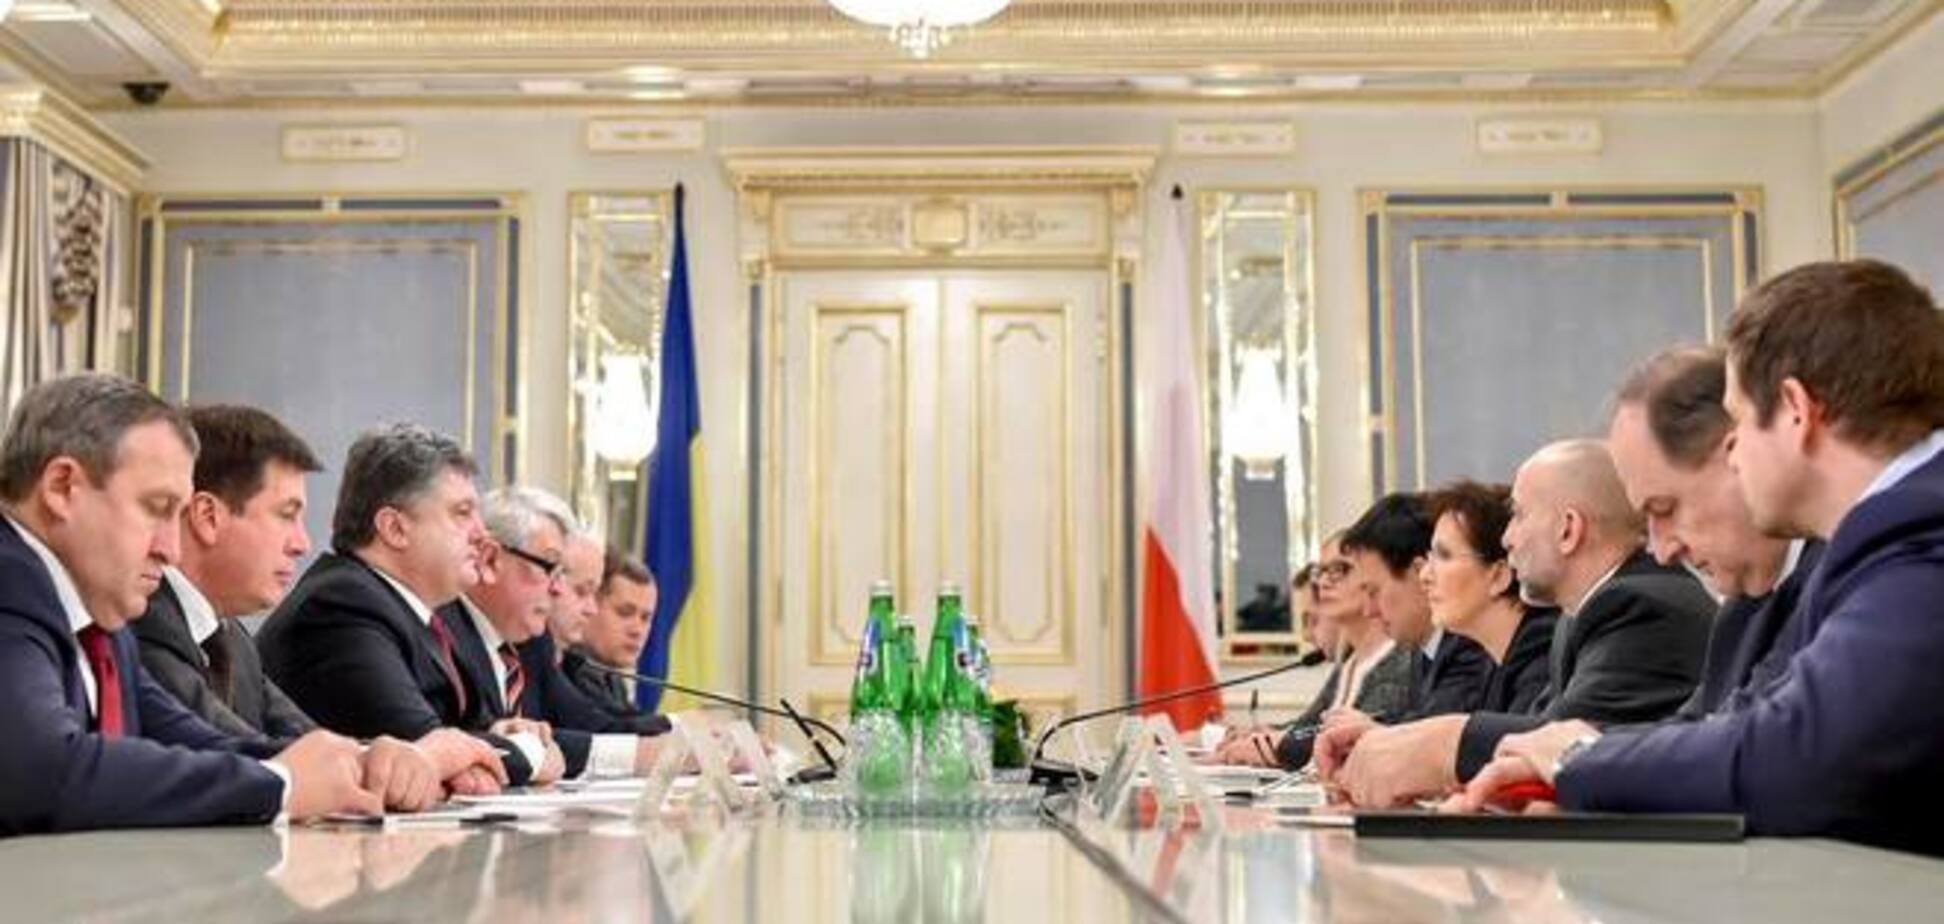 Несмотря на активизацию террористов, Украина готова подписать соглашение о прекращении огня - Порошенко